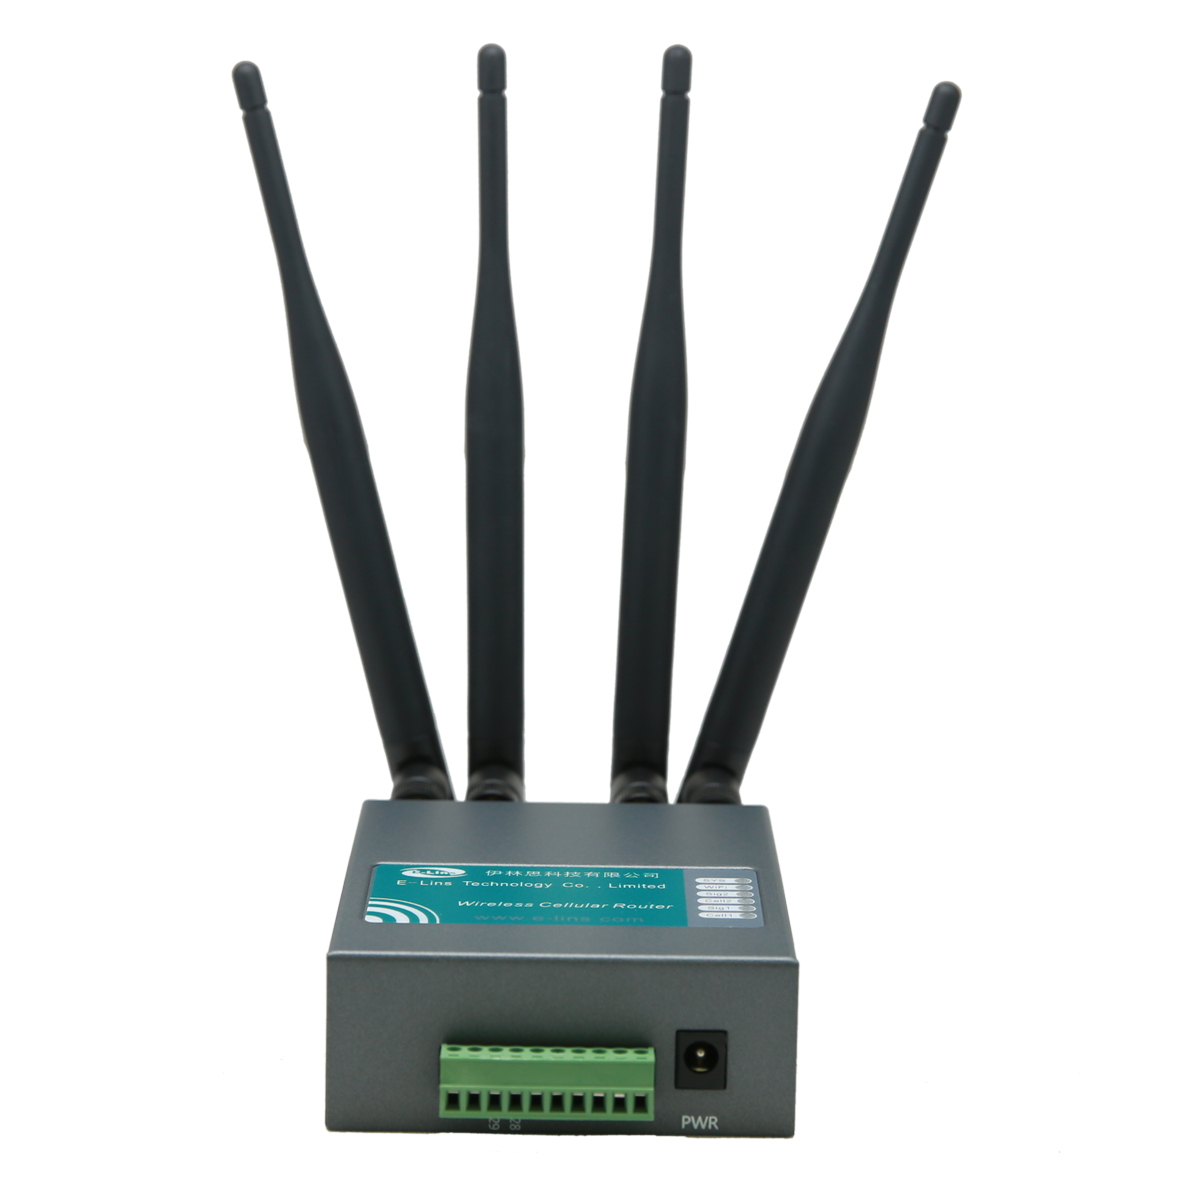 https://www.szelins.com/dual-sim-4g-router-p-19.html